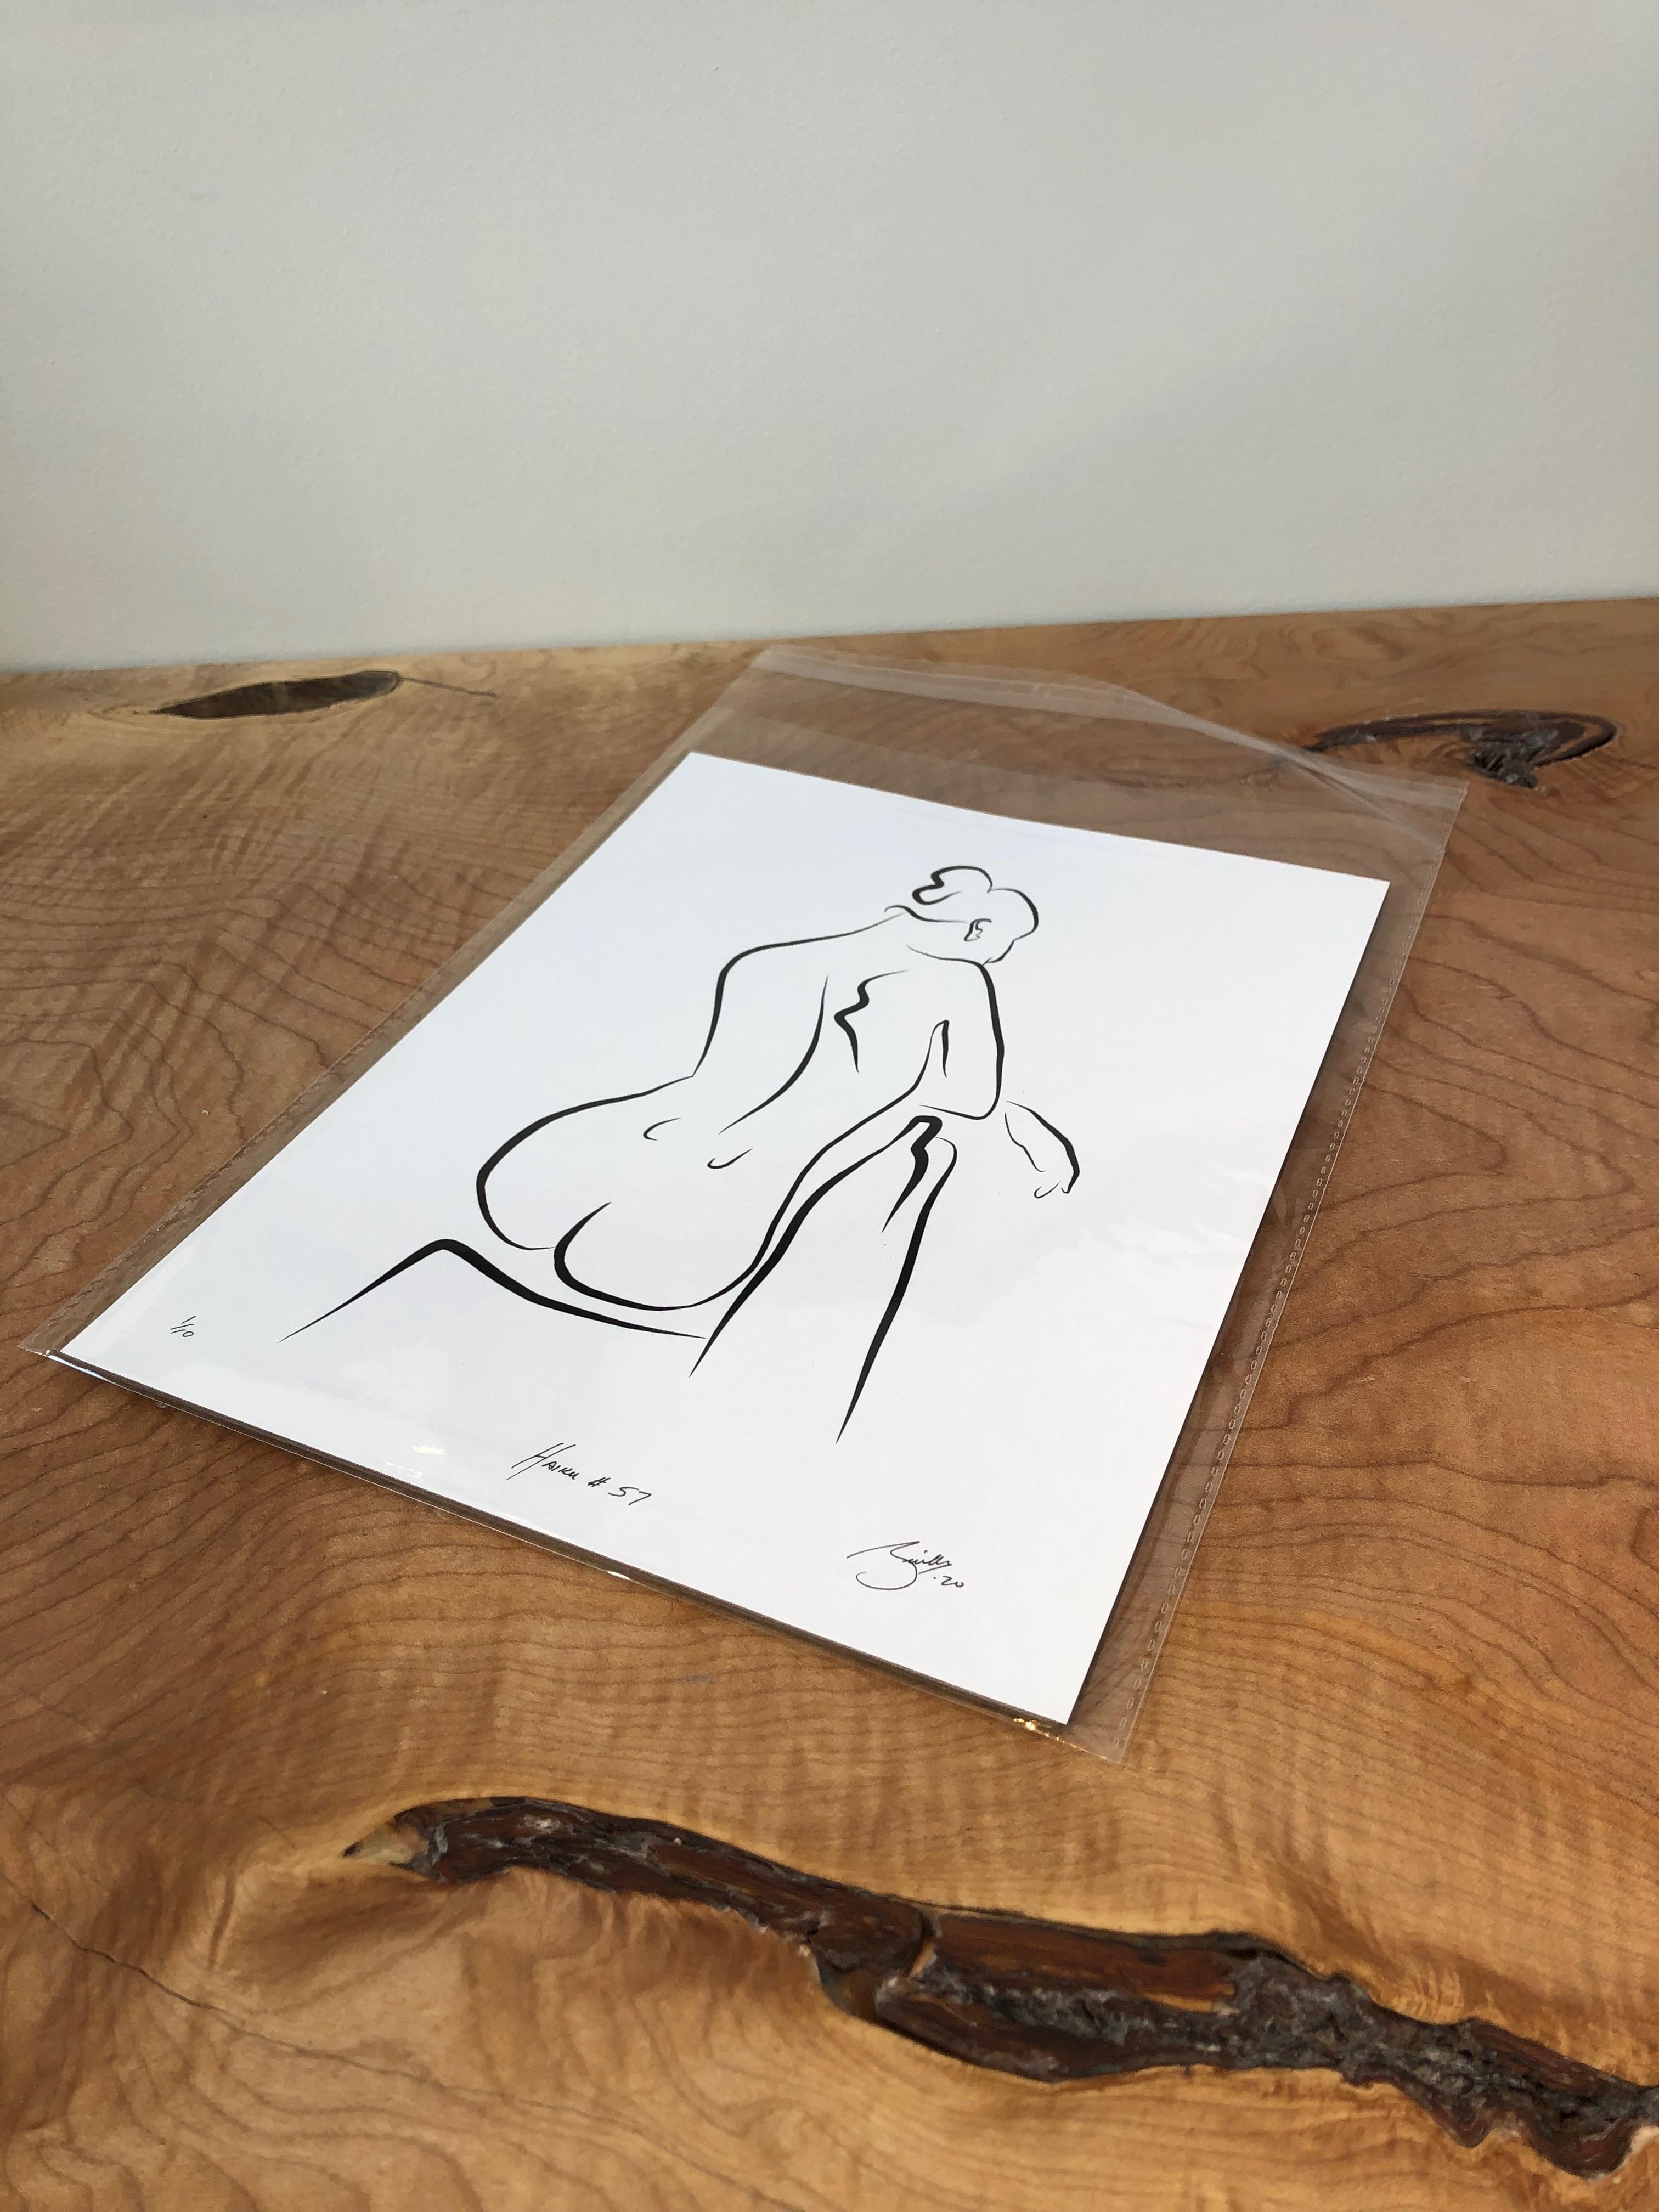 Haiku #57, 1/50 - Digital Vector Drawing Seated Female Nude From Rear - Print by Michael Binkley